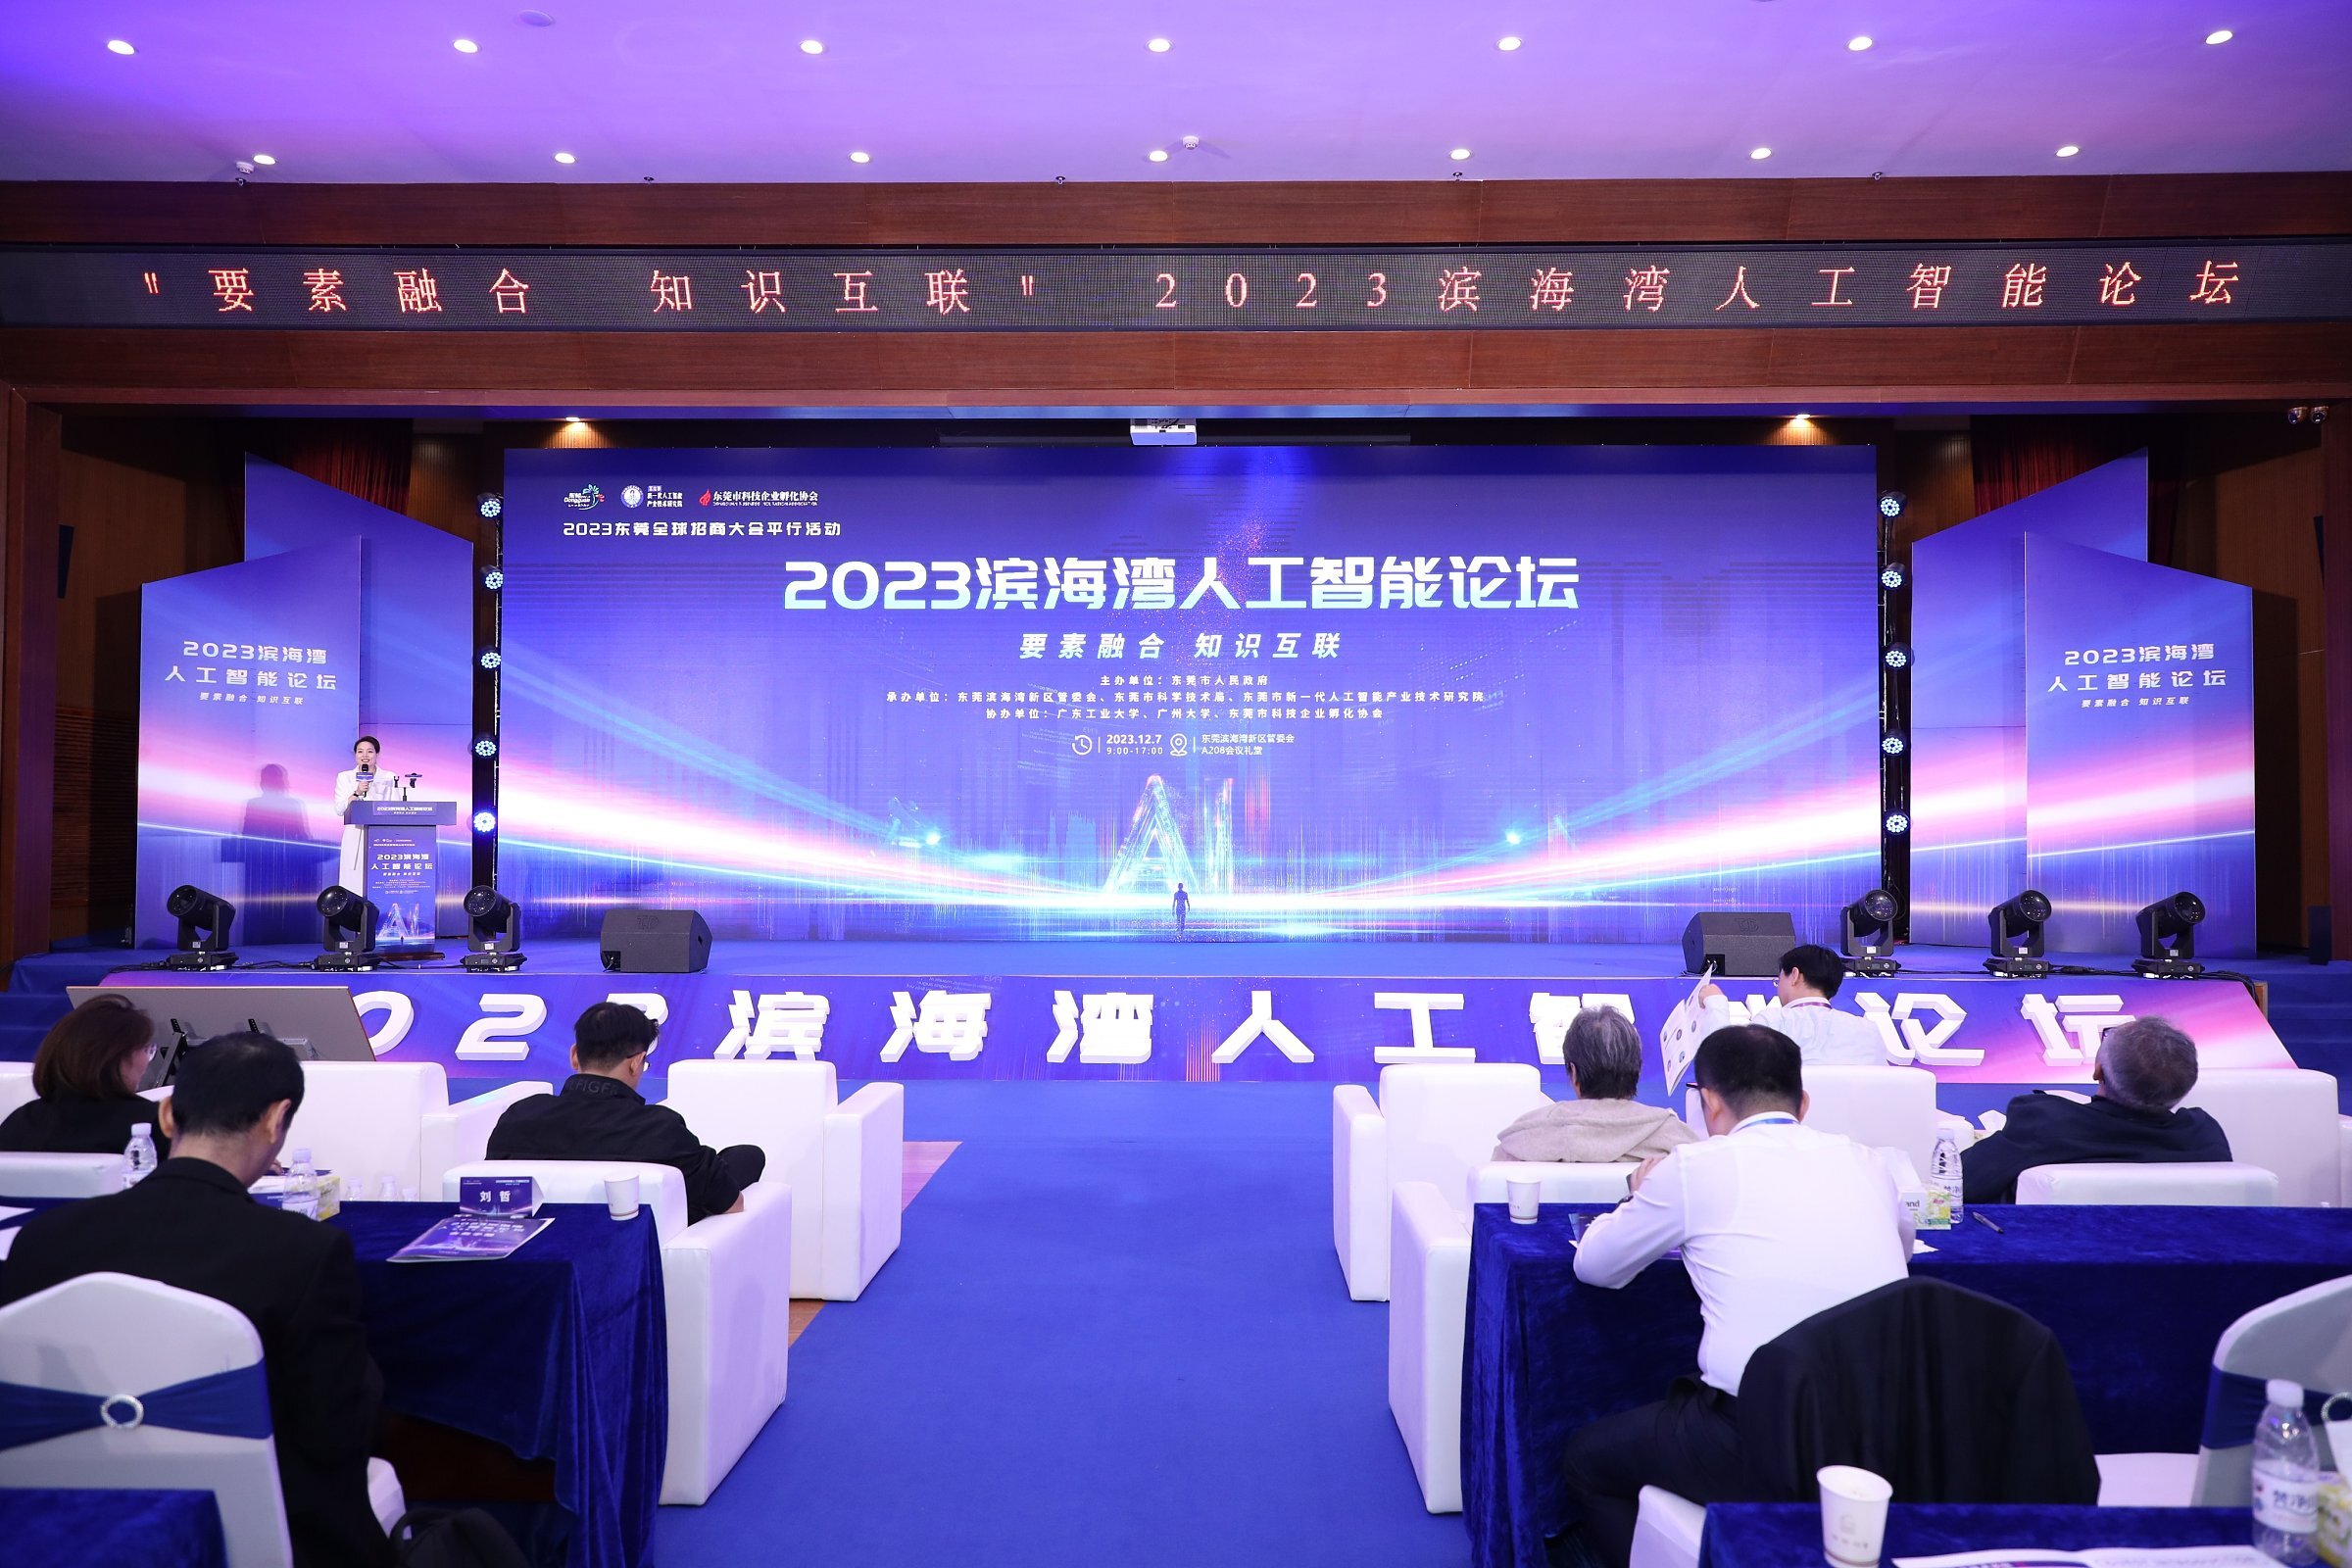 2023滨海湾人工智能论坛举办，范向伟代表和鲸科技共同发起成立工业智能算法联盟